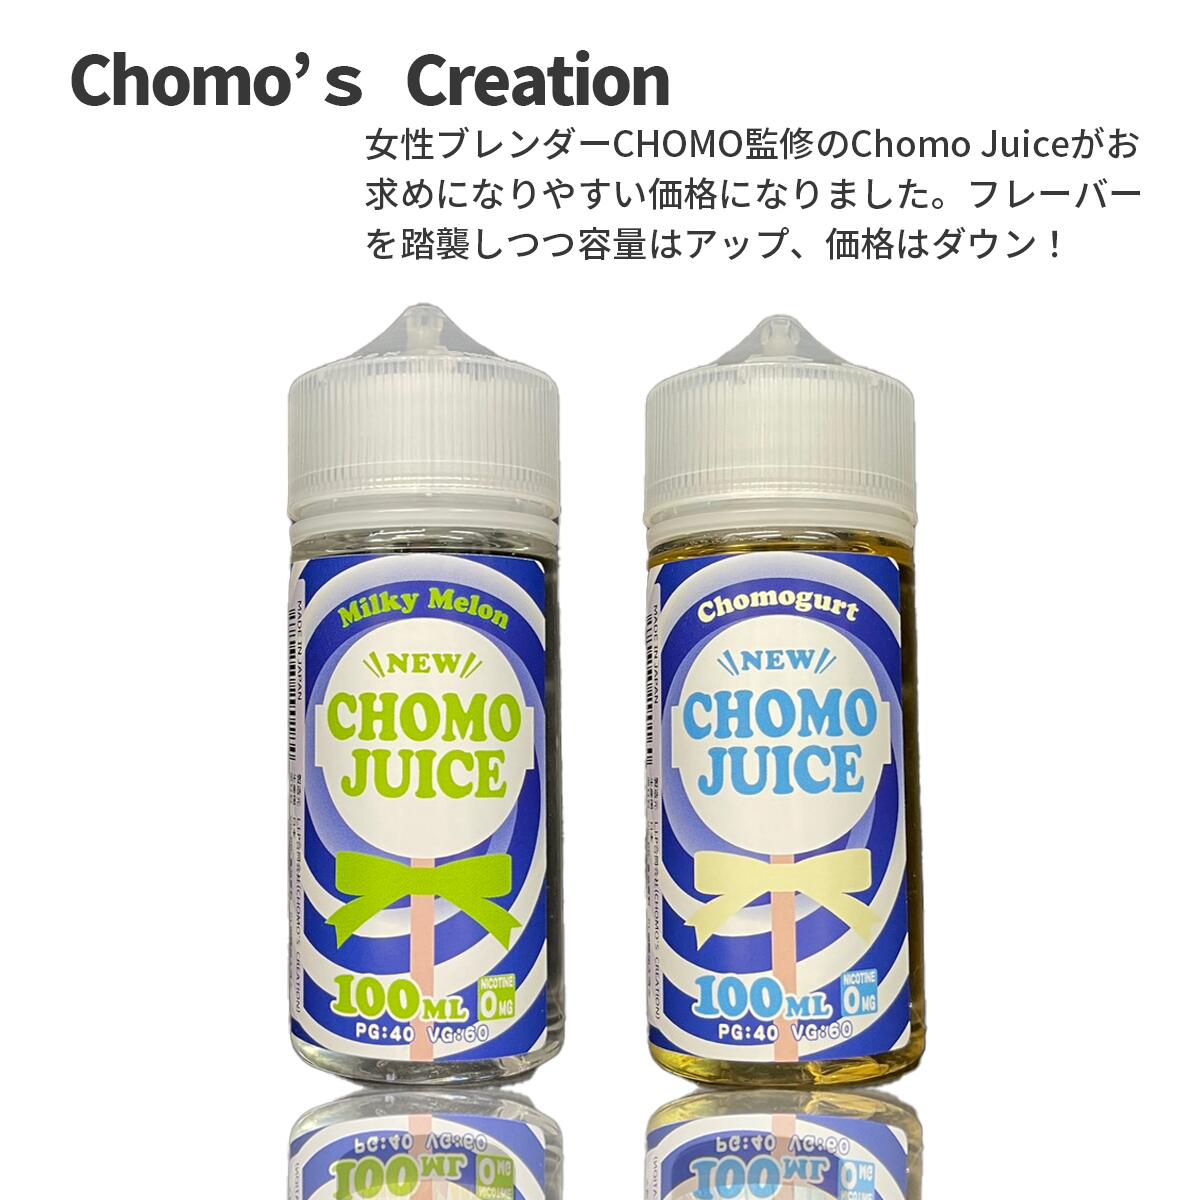 女性ブレンダーCHOMO監修 Chomo Juiceがお求めになりやすい価格になりました。 フレーバーを踏襲しつつ容量はアップ、価格はダウン！ 商品仕様 メーカー Chomo‘s Creation シリーズ Chomo Juice チョモジュース 容量 100 ml タイプ フルーツ系 清涼剤・メンソールの有無 なし フレーバー Chomogurt（チョモグルト） 以前より再販リクエストの多かったチョモグルトをパワーアップしてリニューアル！ 昔懐かしのオレンジのつぶつぶが入ったヨーグルトタブレット味 Milky Melon（ミルキーメロン） 甘くクリーミーでミルキーなメロンキャラメルをモチーフにしたメロンクリーム味。 主成分 植物性グリセリン / プロピレングリコール / 香料 配合率 PG 40 ％ / VG 60％ タール・ニコチン 0 mg 国 日本 その他Plaisir商品 イナズマ バーストミントメンソール同梱おすすめ商品はこちらご購入はこちらからご購入はこちらから